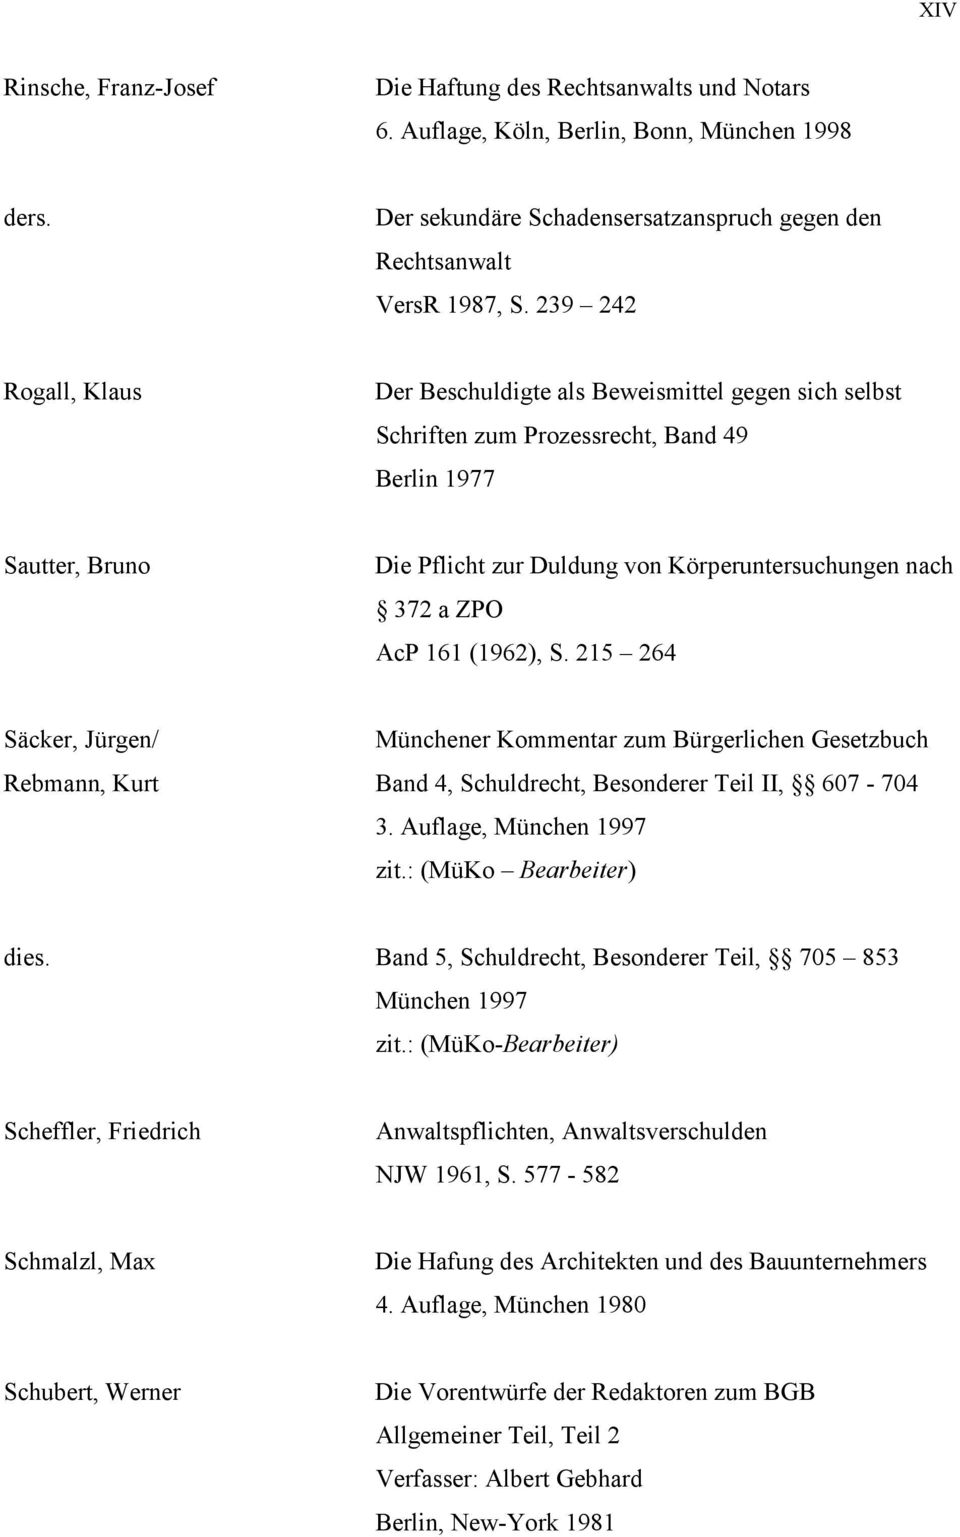 ZPO AcP 161 (1962), S. 215 264 Säcker, Jürgen/ Münchener Kommentar zum Bürgerlichen Gesetzbuch Rebmann, Kurt Band 4, Schuldrecht, Besonderer Teil II, 607-704 3. Auflage, München 1997 zit.